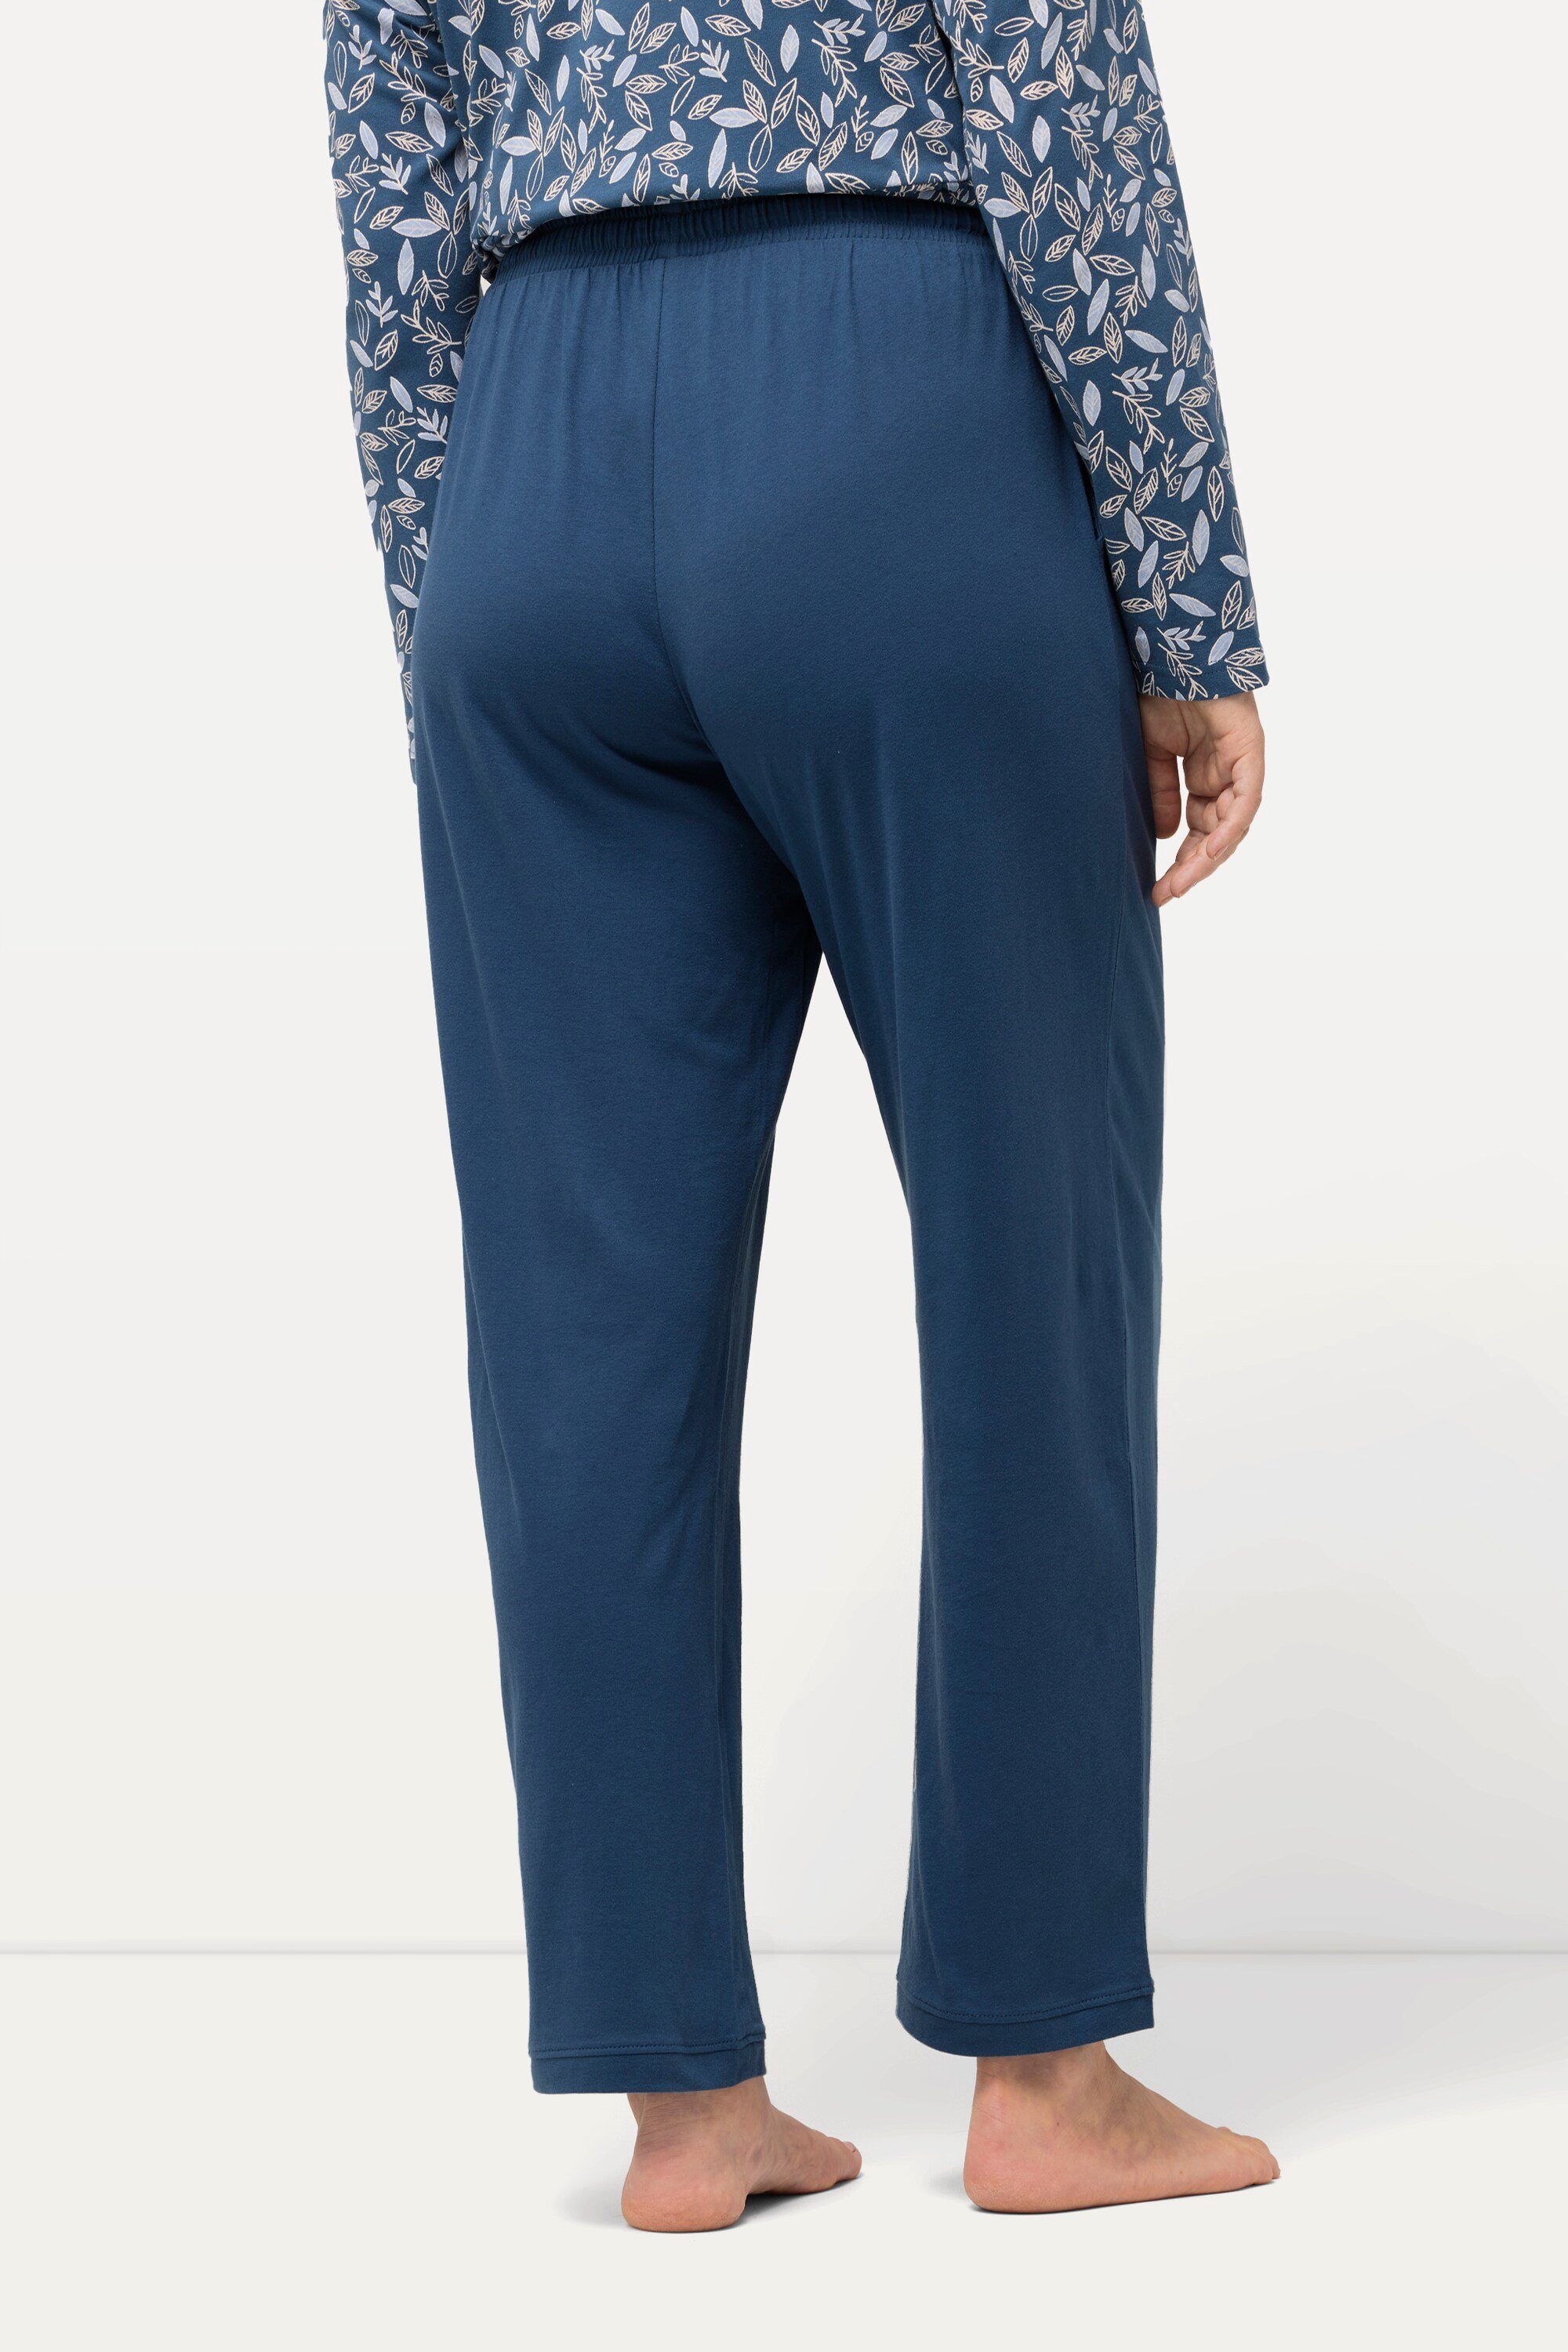 tintenblau einfarbig Pyjamahose Bein Popken Ulla gerades Pyjama